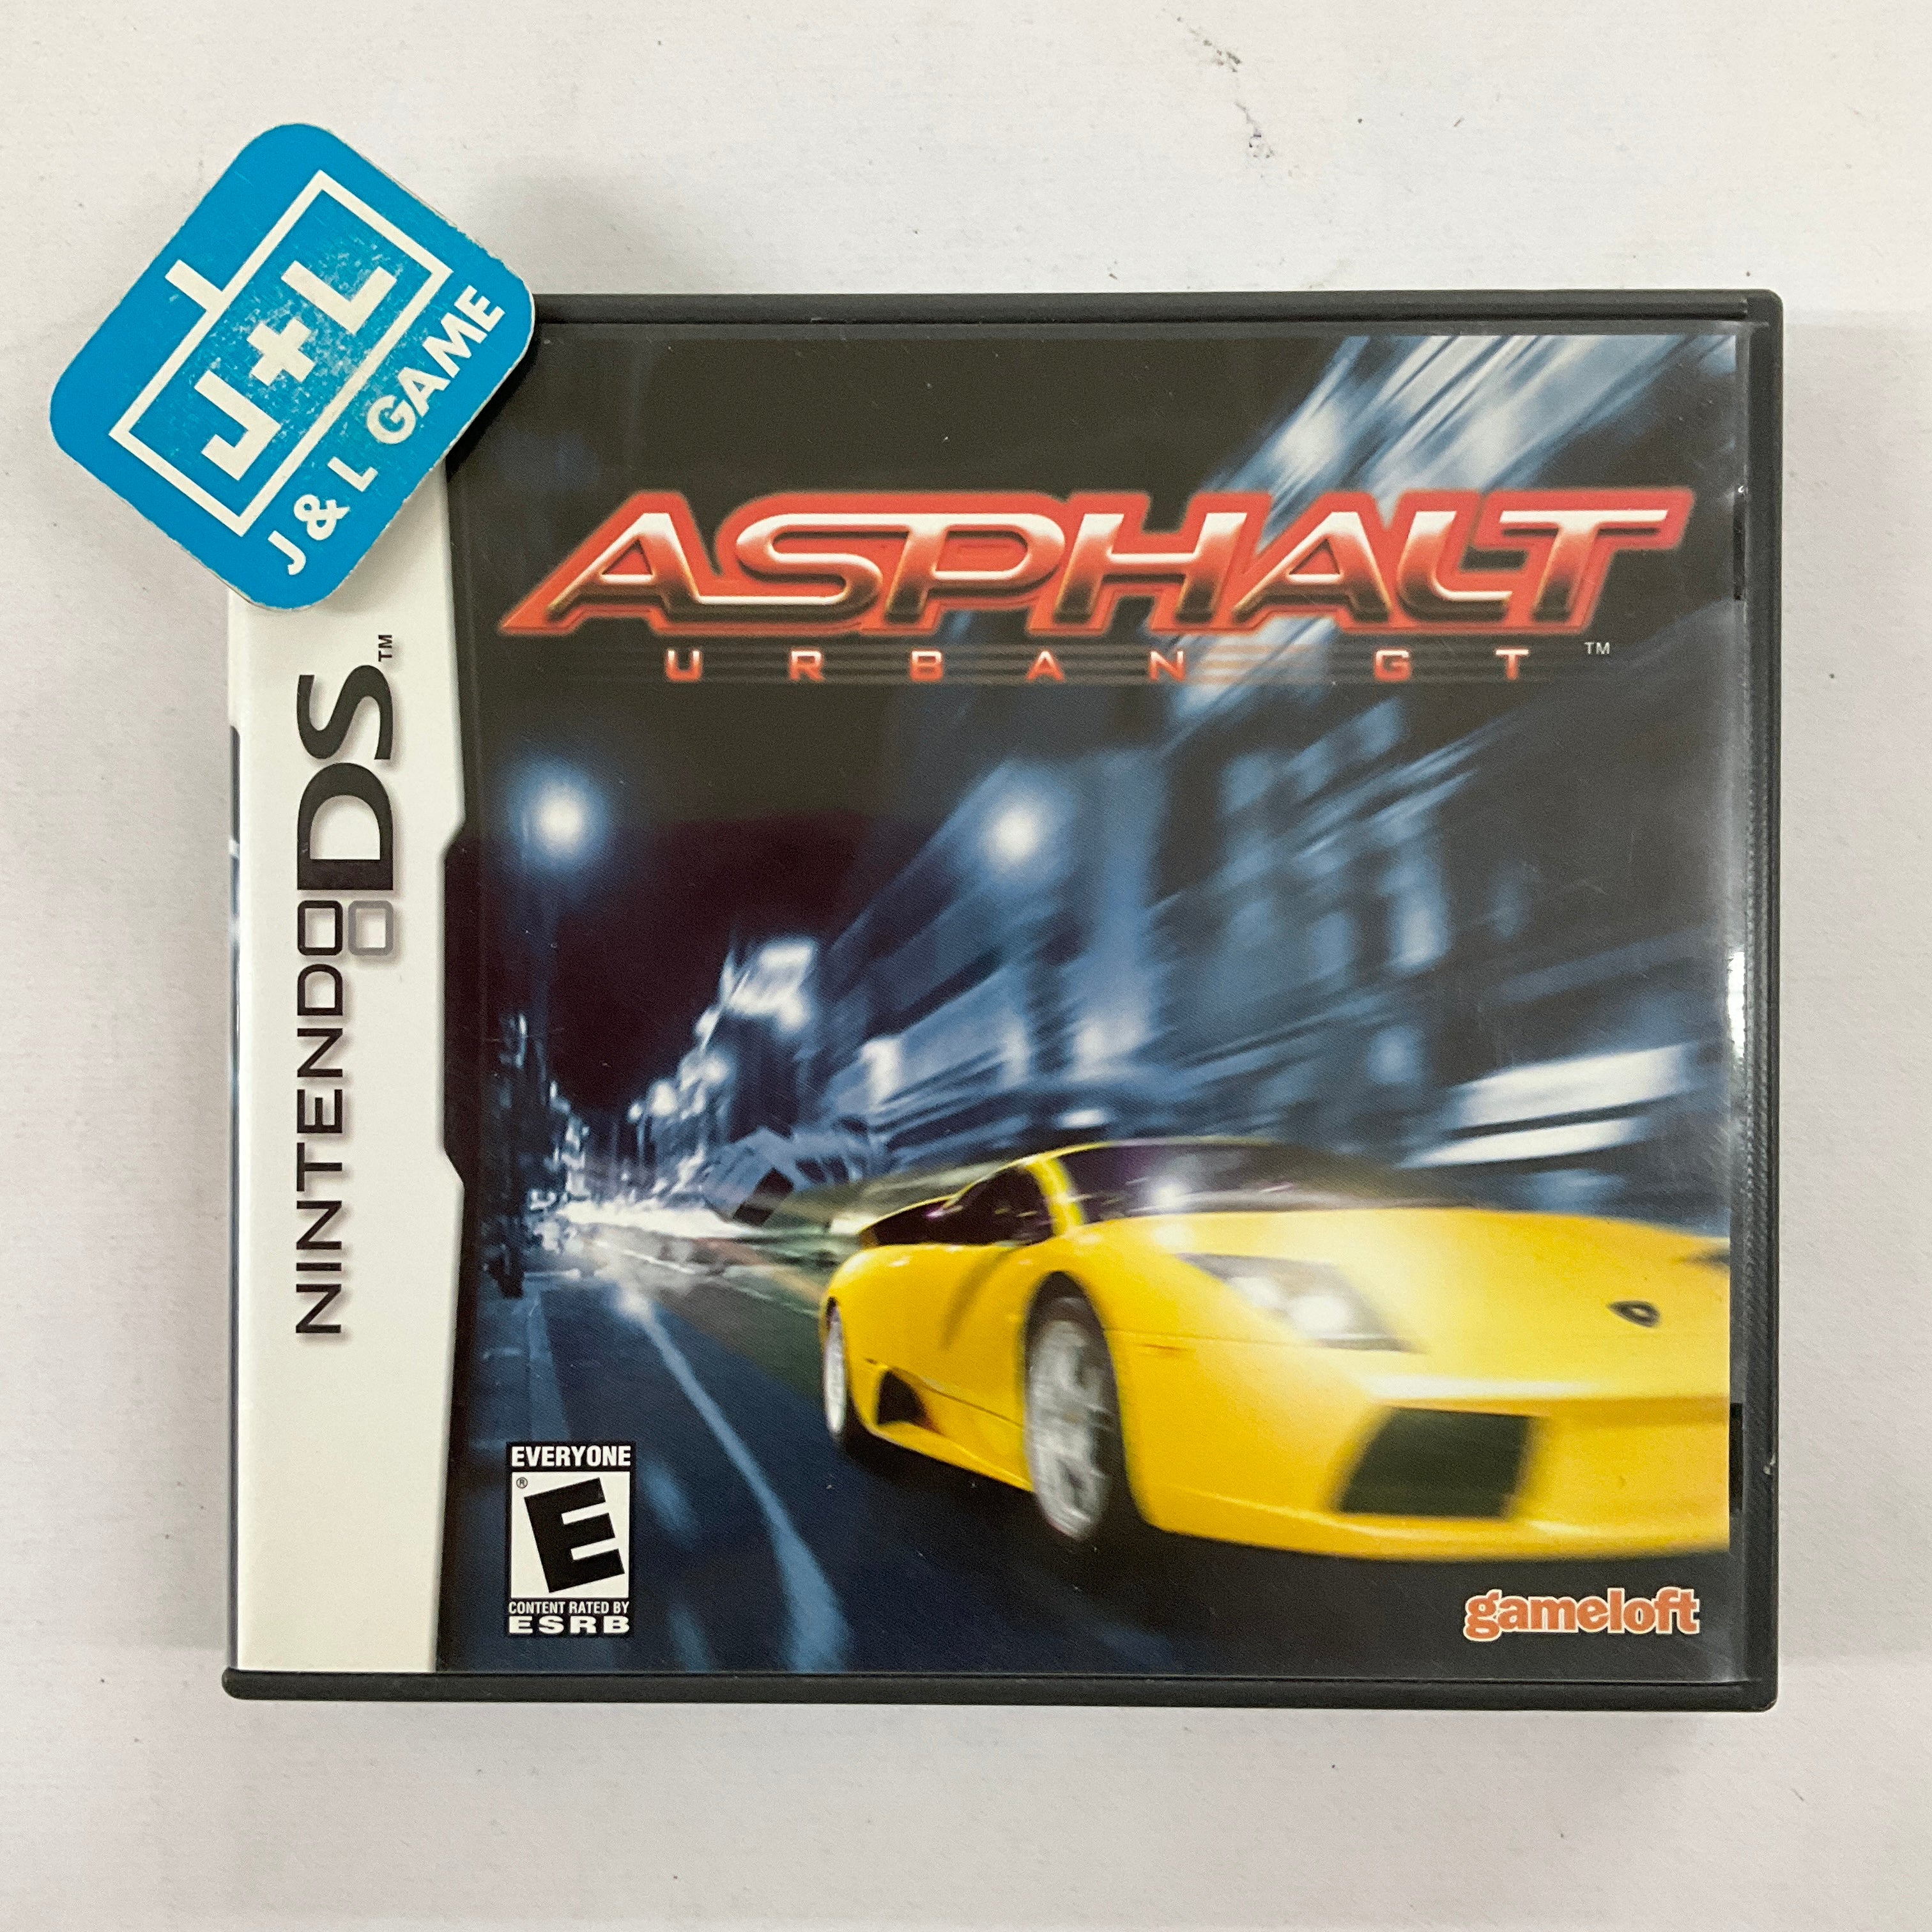 Asphalt: Urban GT - (NDS) Nintendo DS [Pre-Owned]